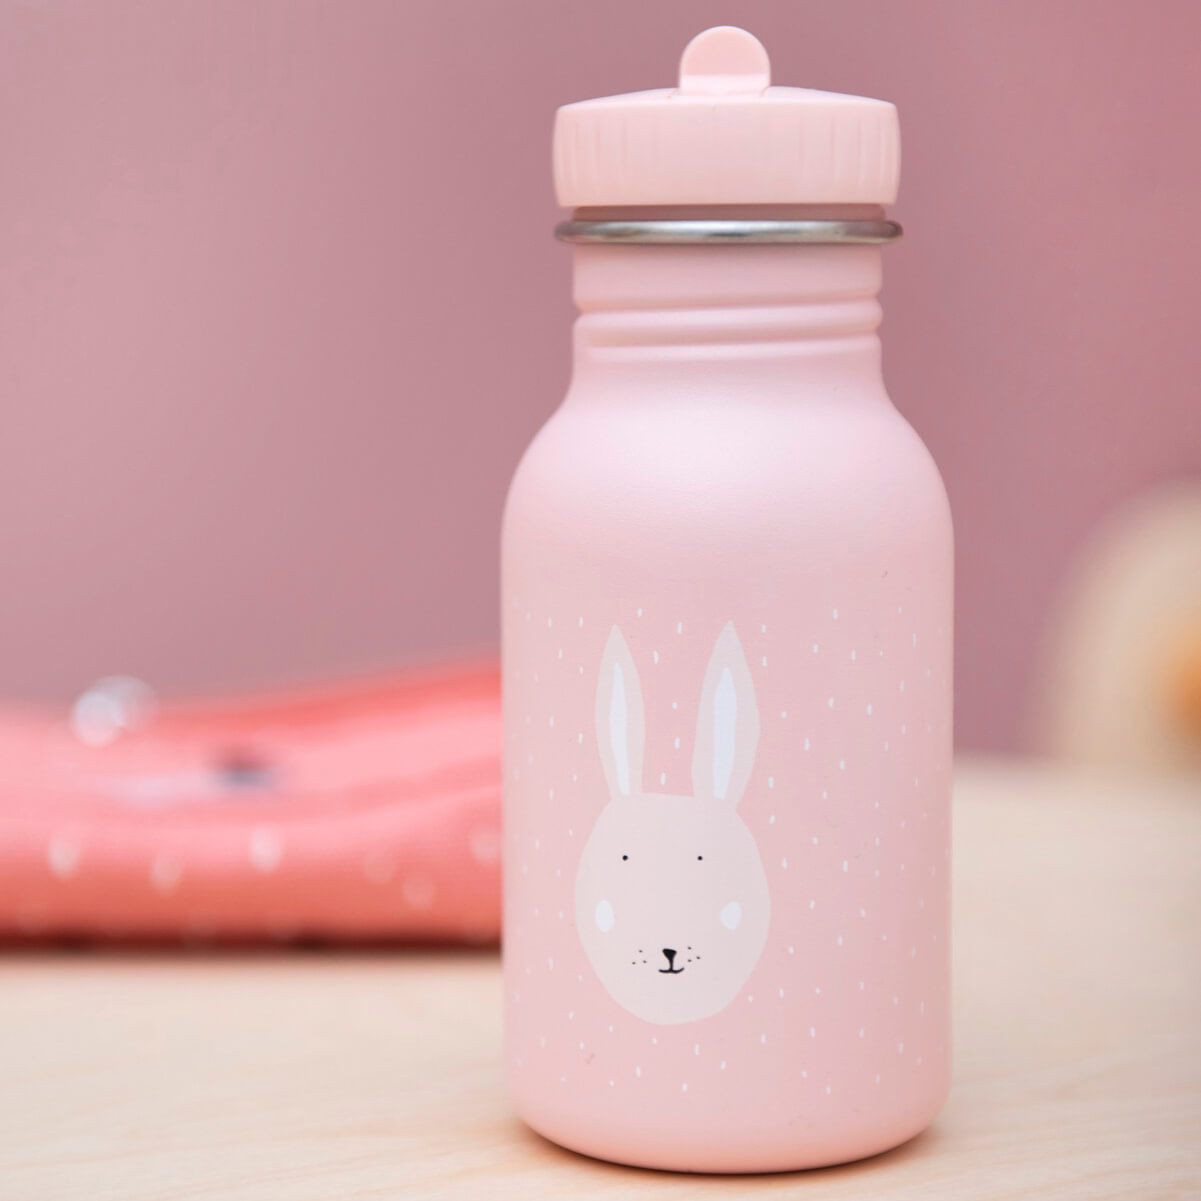 botella conejo trixie